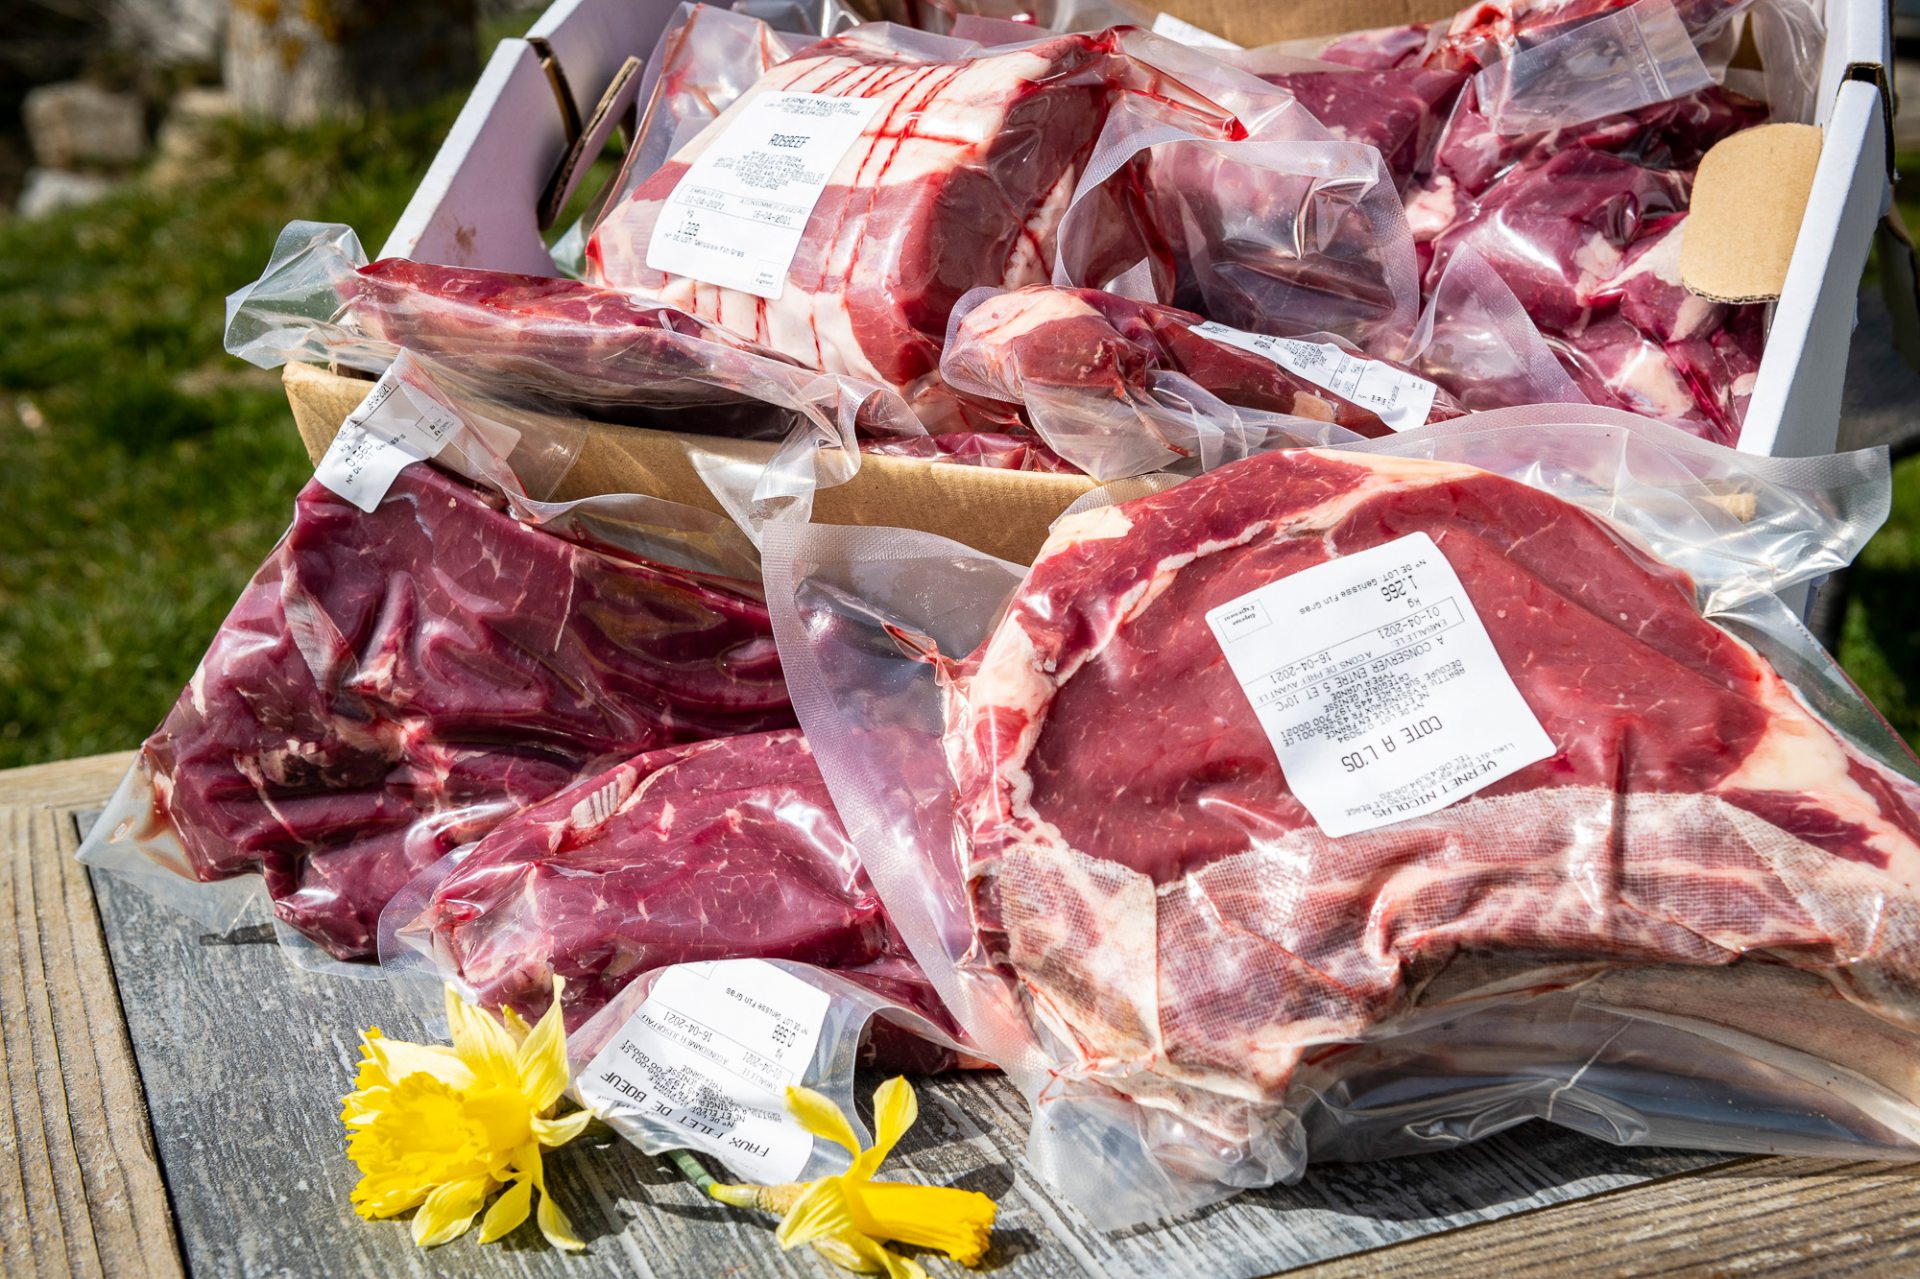 Colis de viande fraîche de veau Limousin - 6 kg - Origine Tarn